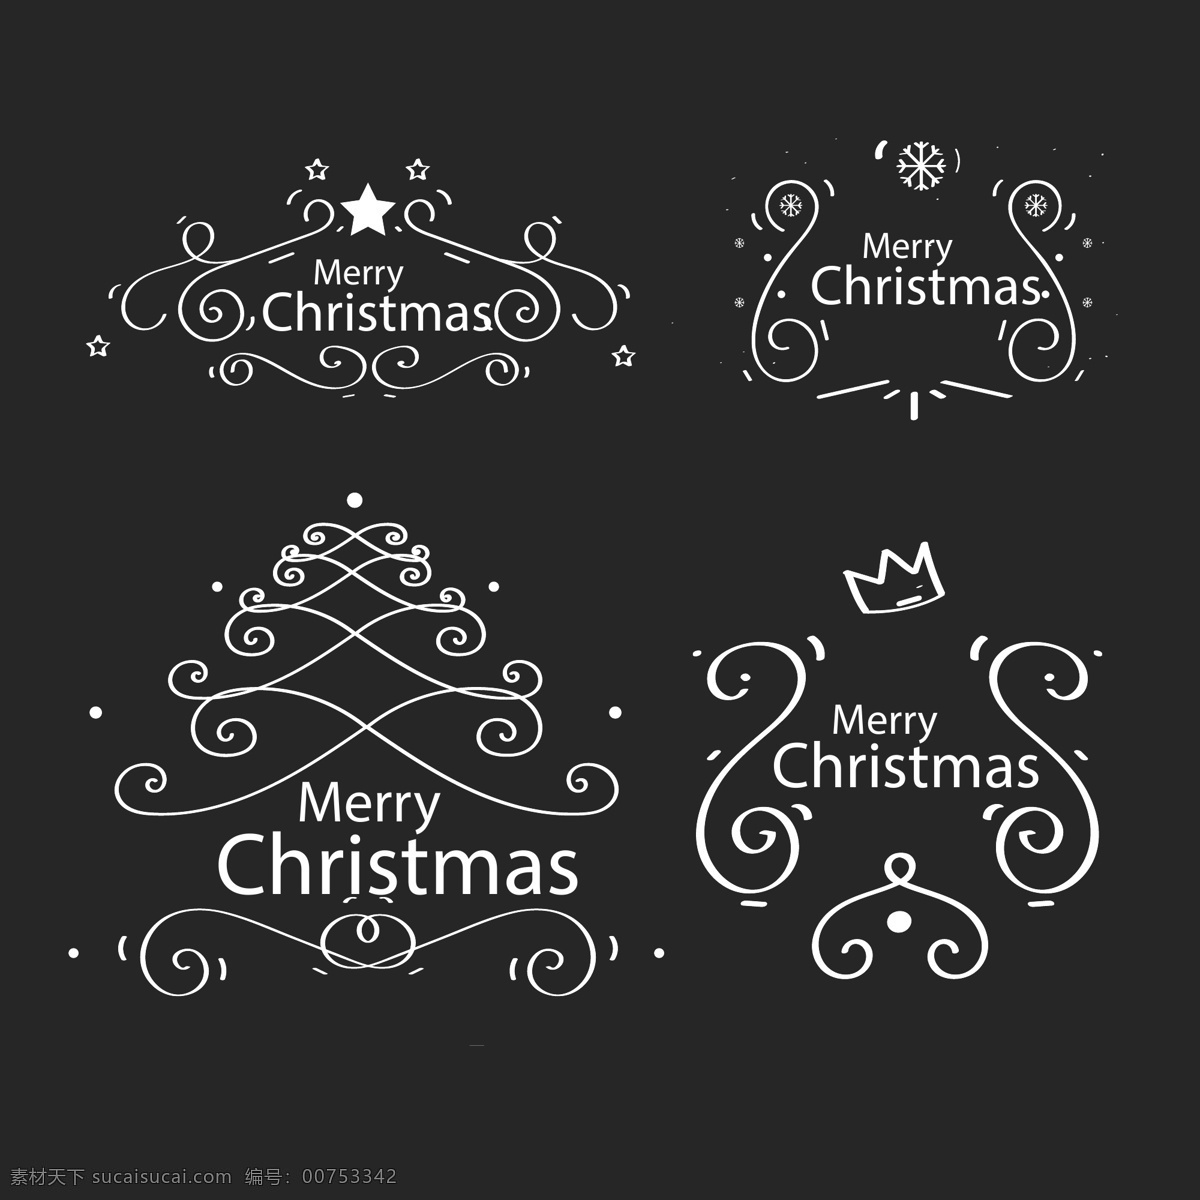 圣诞节 装饰 元素 圣诞袜子 素材背景 动态 圣诞节海报 圣诞老人 驯鹿 袜子 节日元素 东方设计元素 设计元素 贺卡设计元素